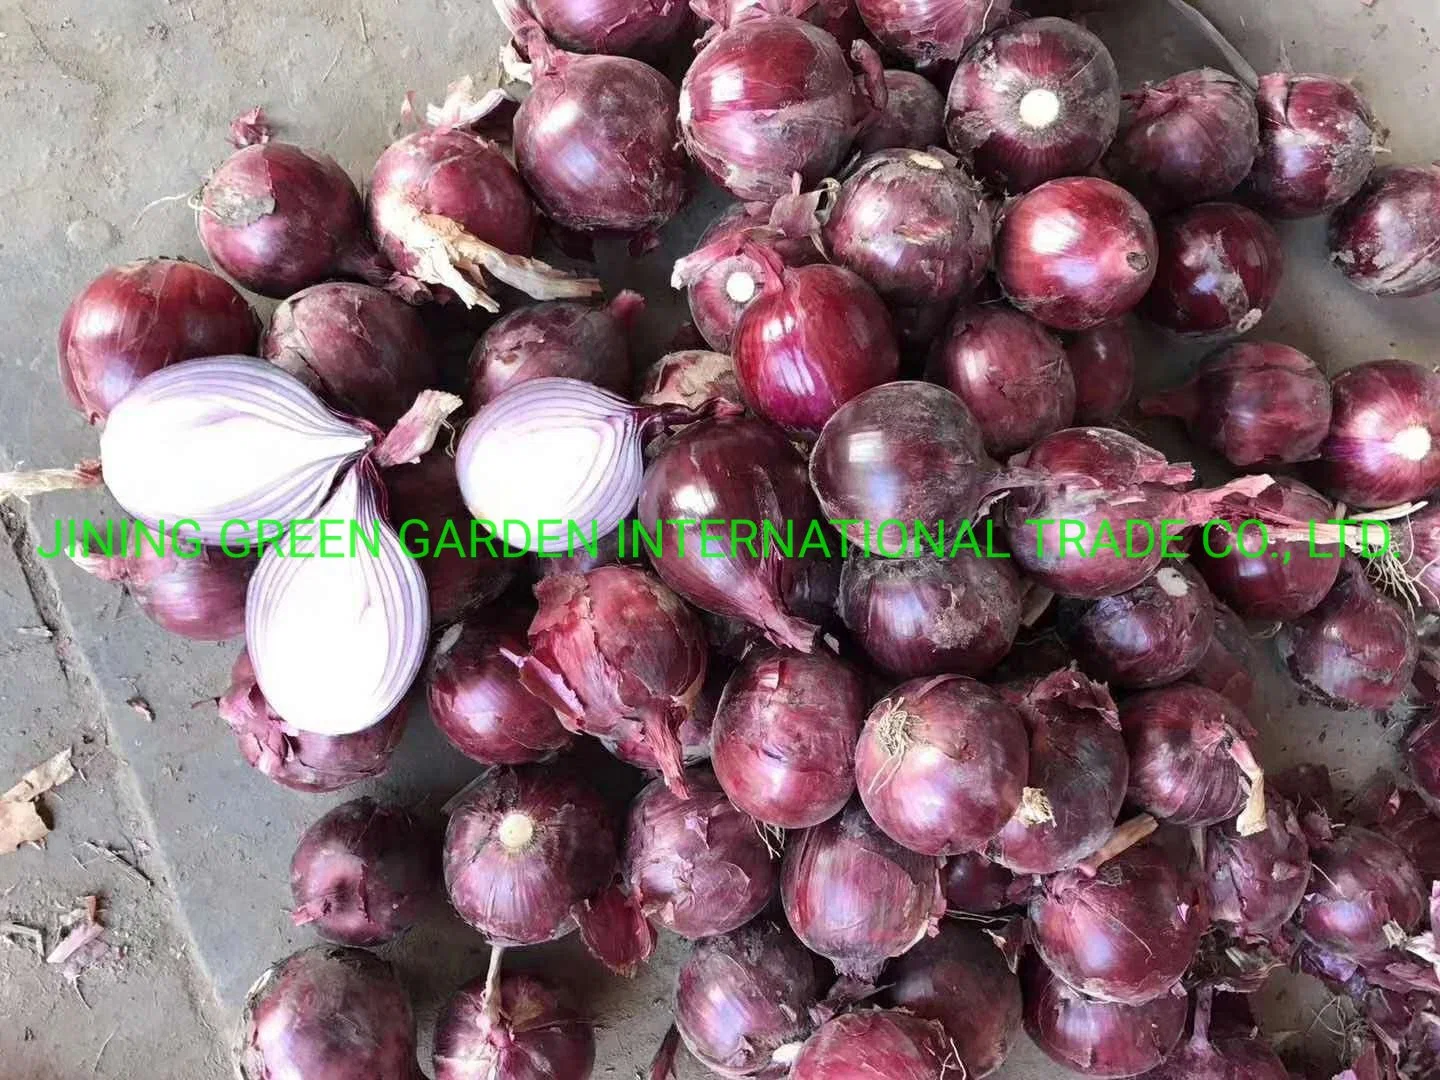 La parte superior calidad fresca Cebolla Roja China muestra gratuita de buen precio.